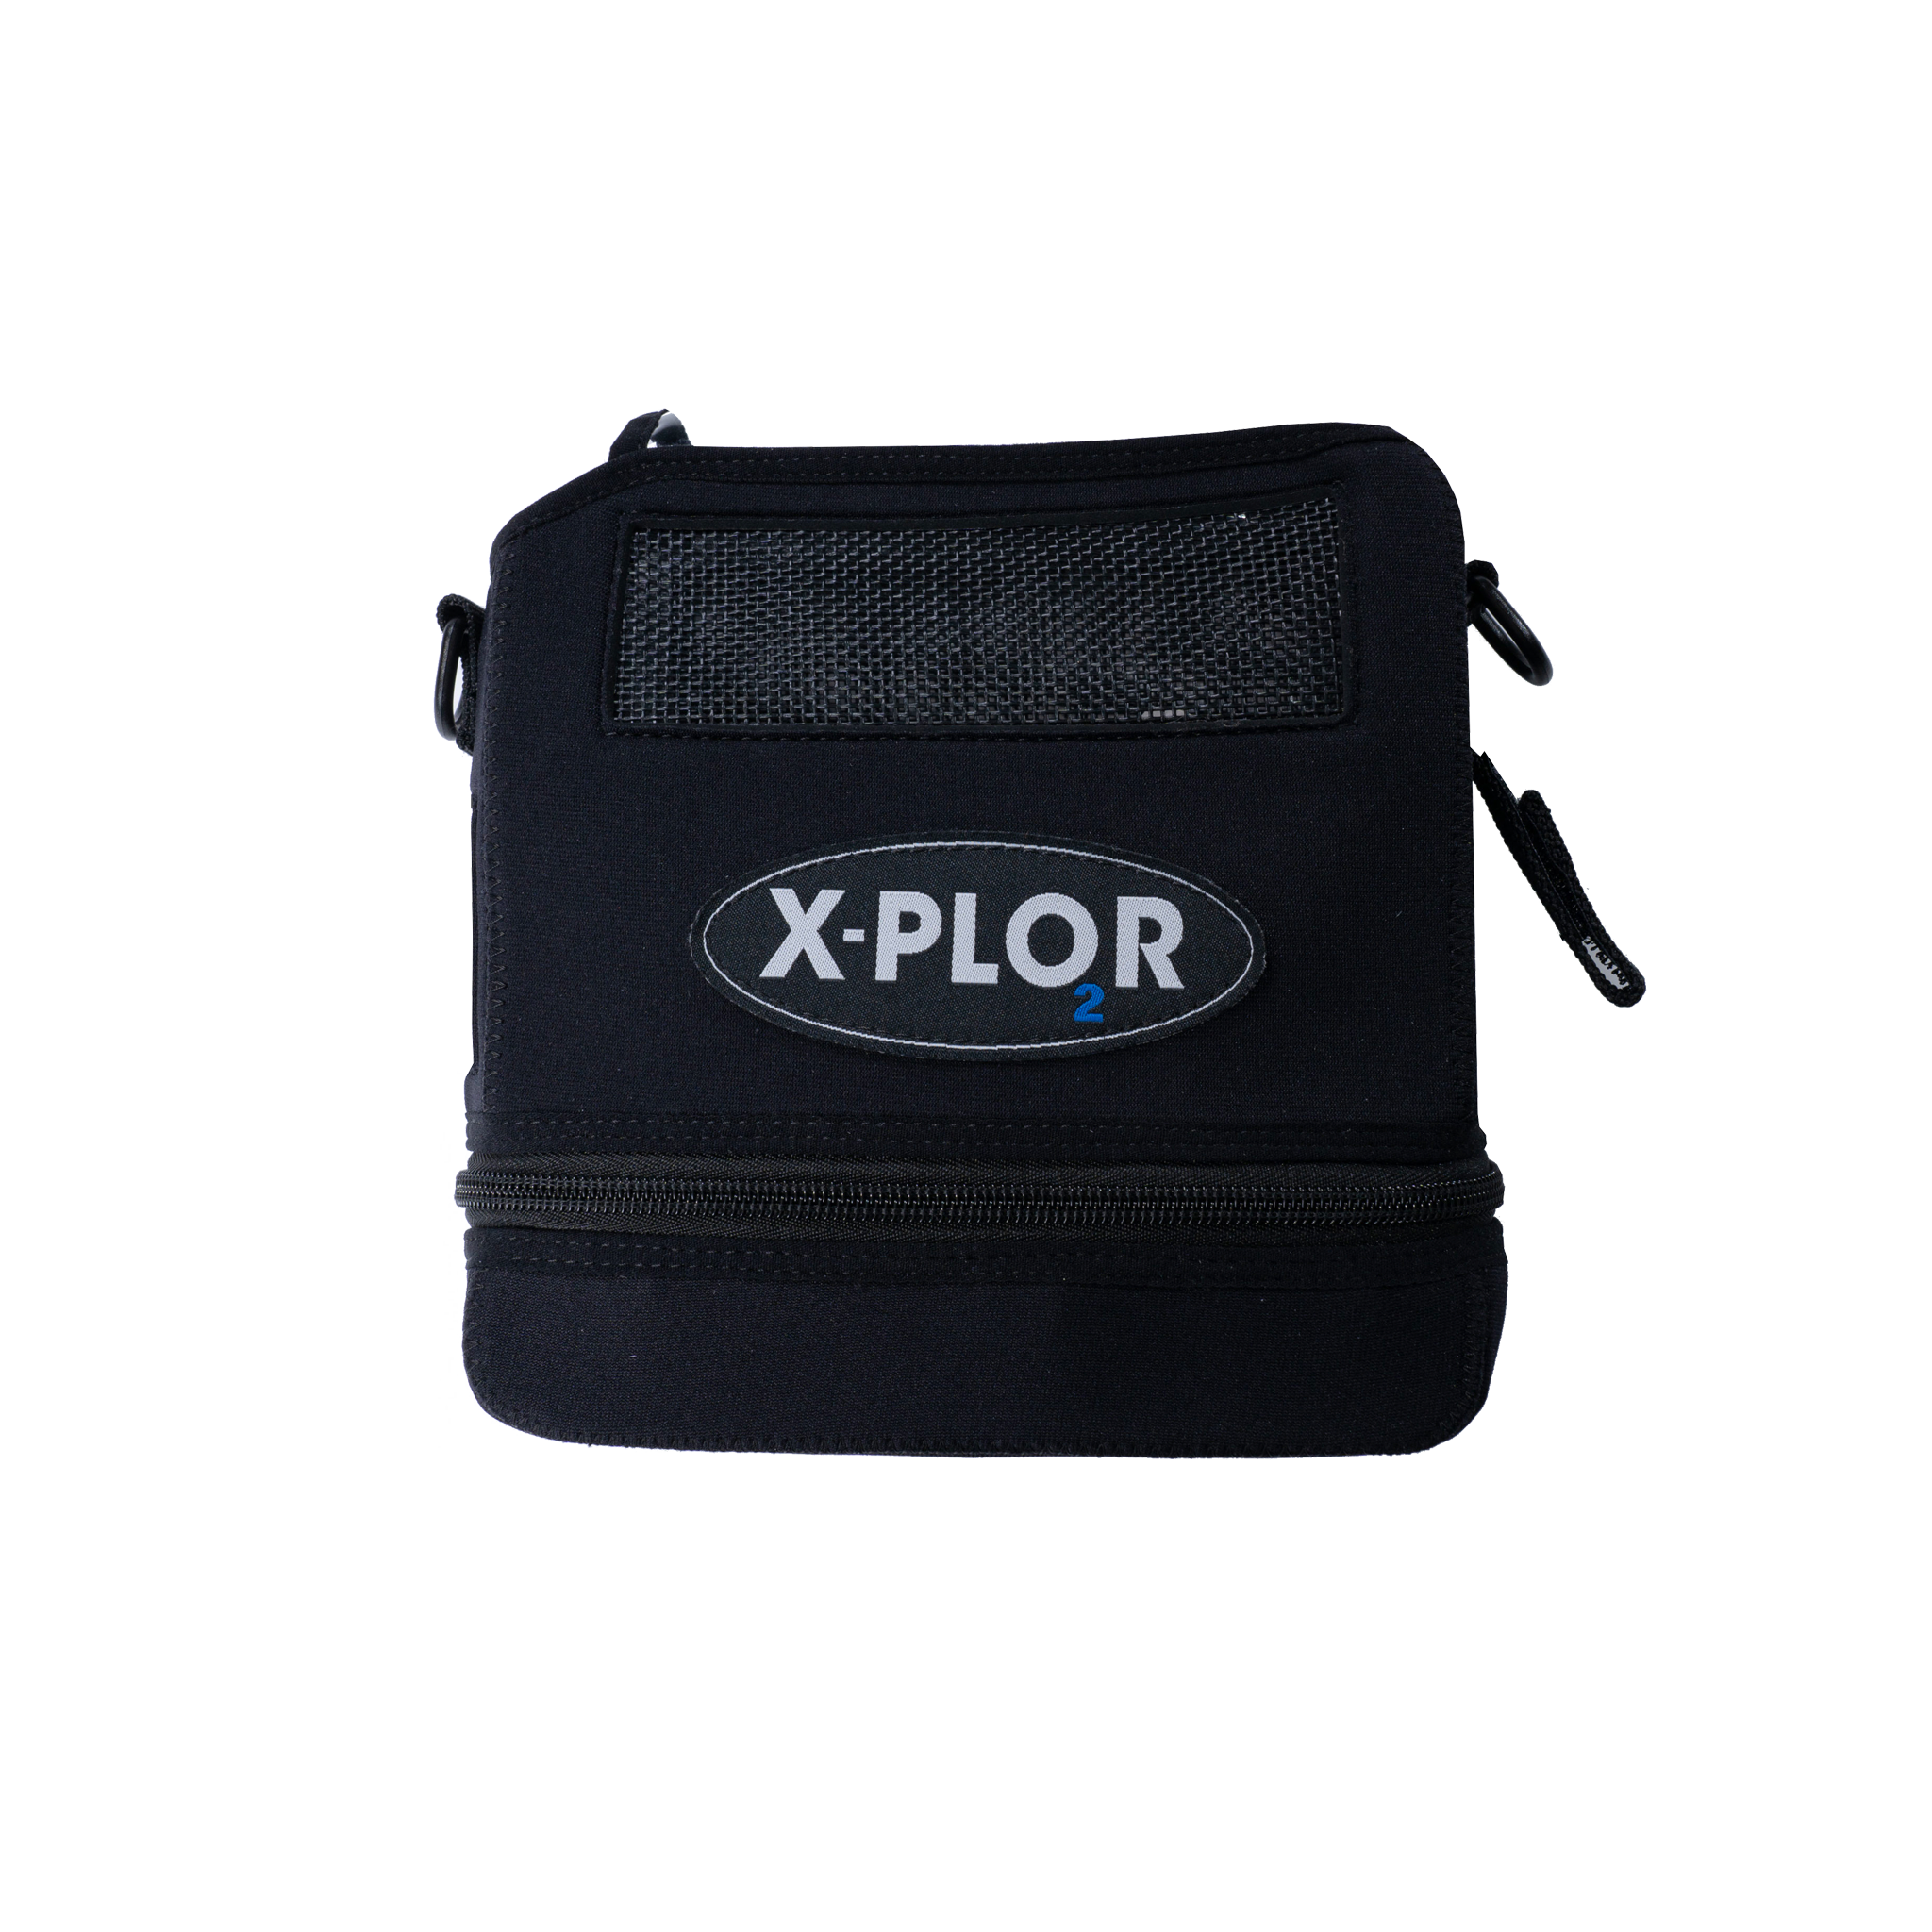 X-PLOR Carry Bag